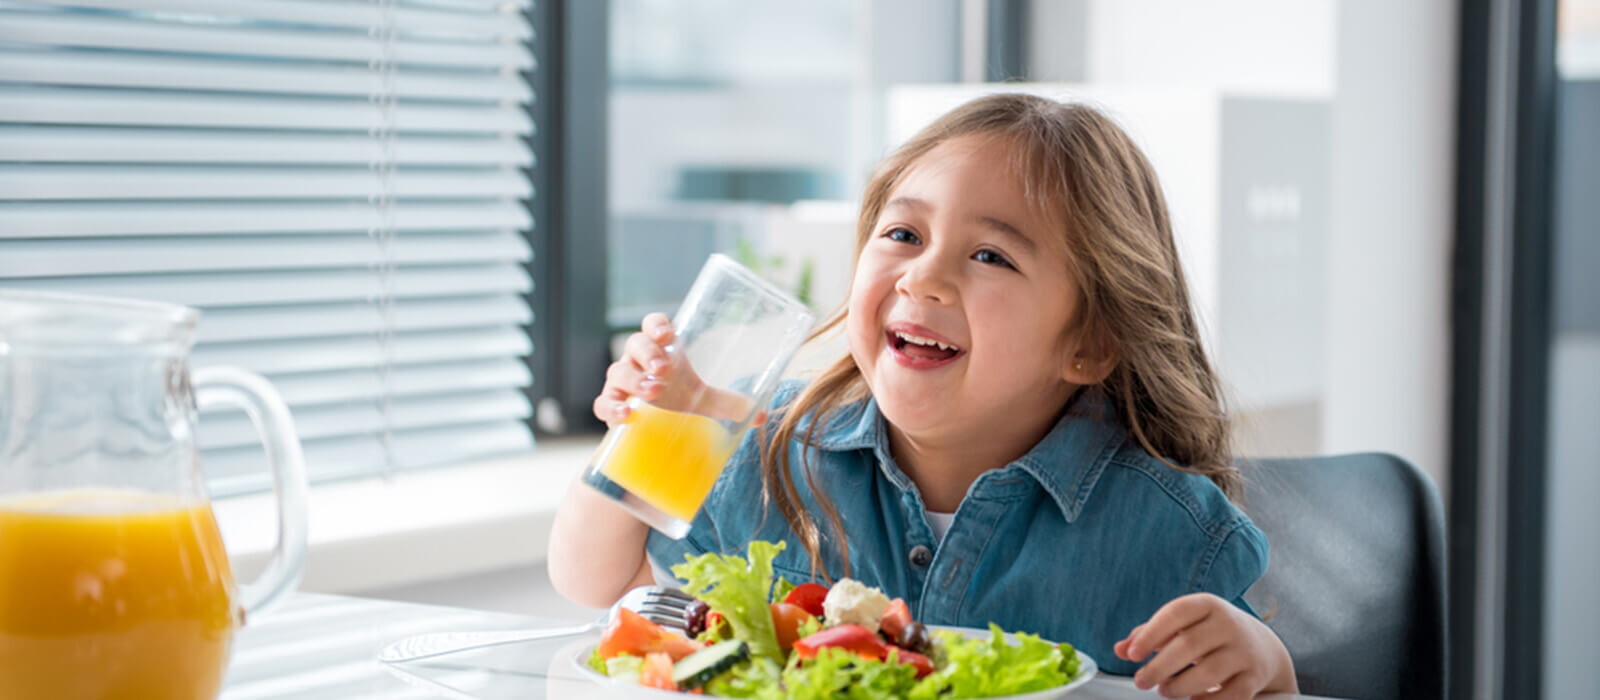 Tips Penuhi Asupan Nutrisi untuk Jaga Berat Badan Ideal Anak